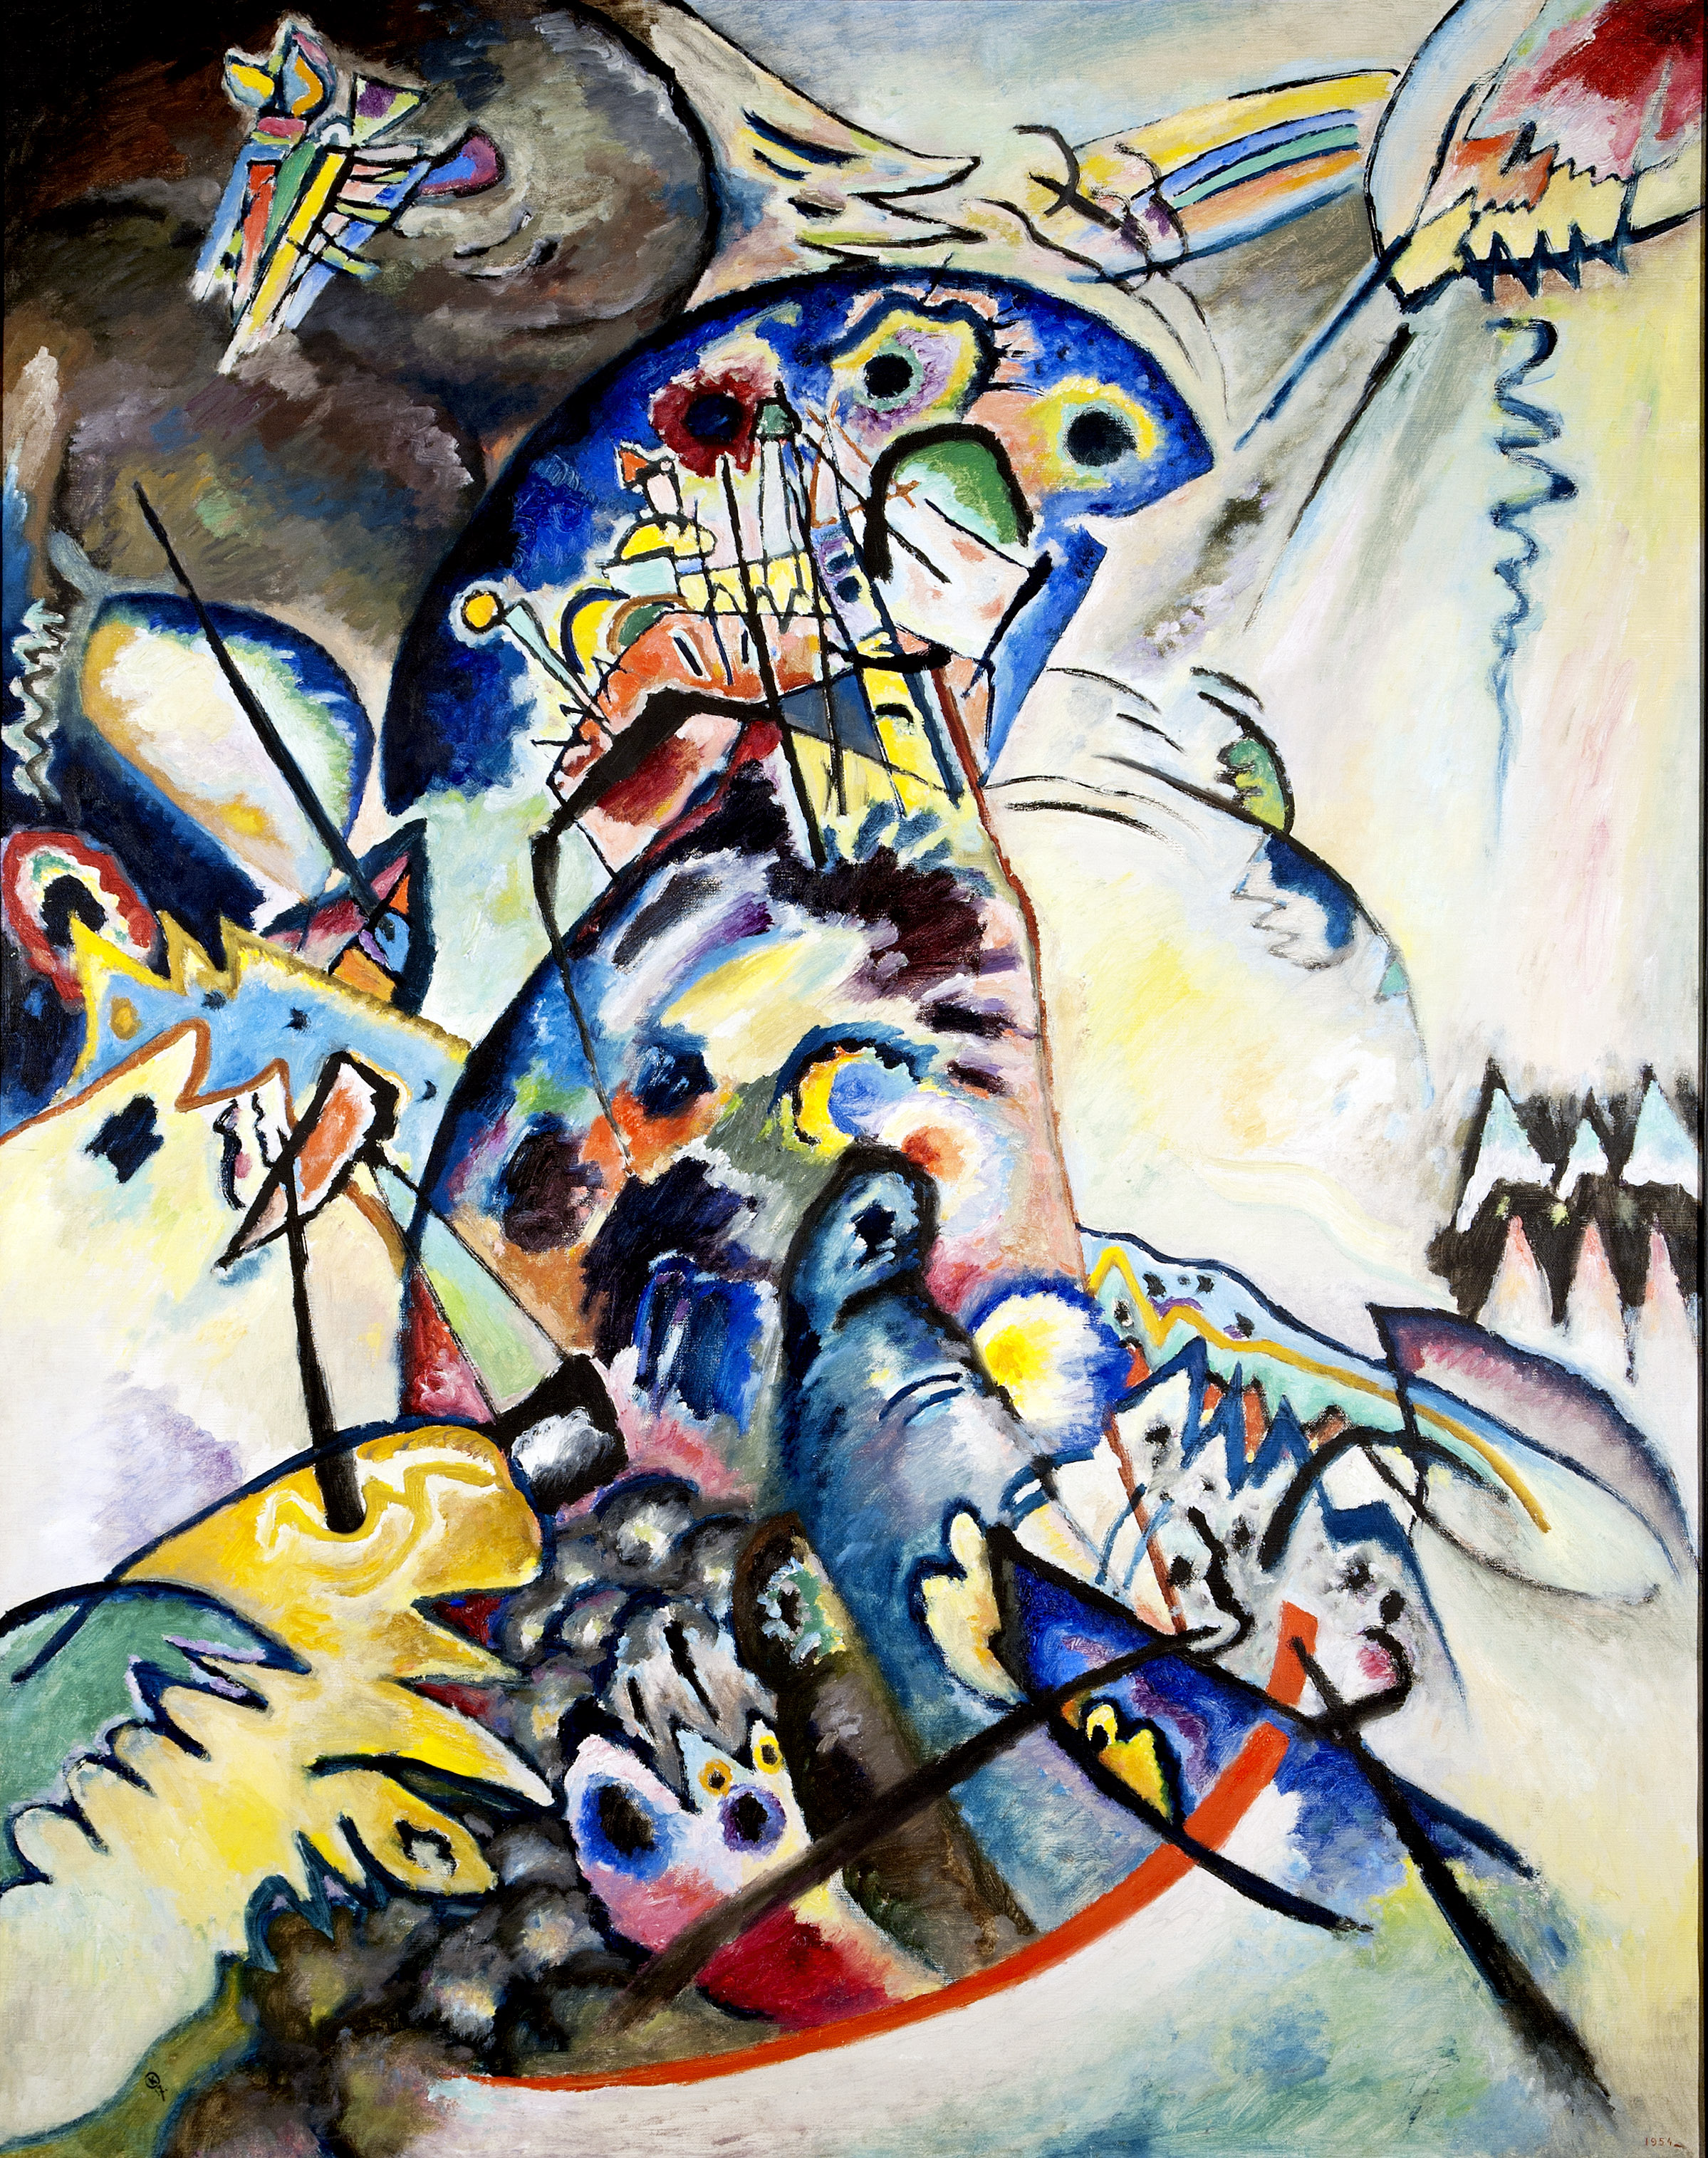 藍色波峰 by Wassily Kandinsky - 1917 年 - 133 x 104 厘米 